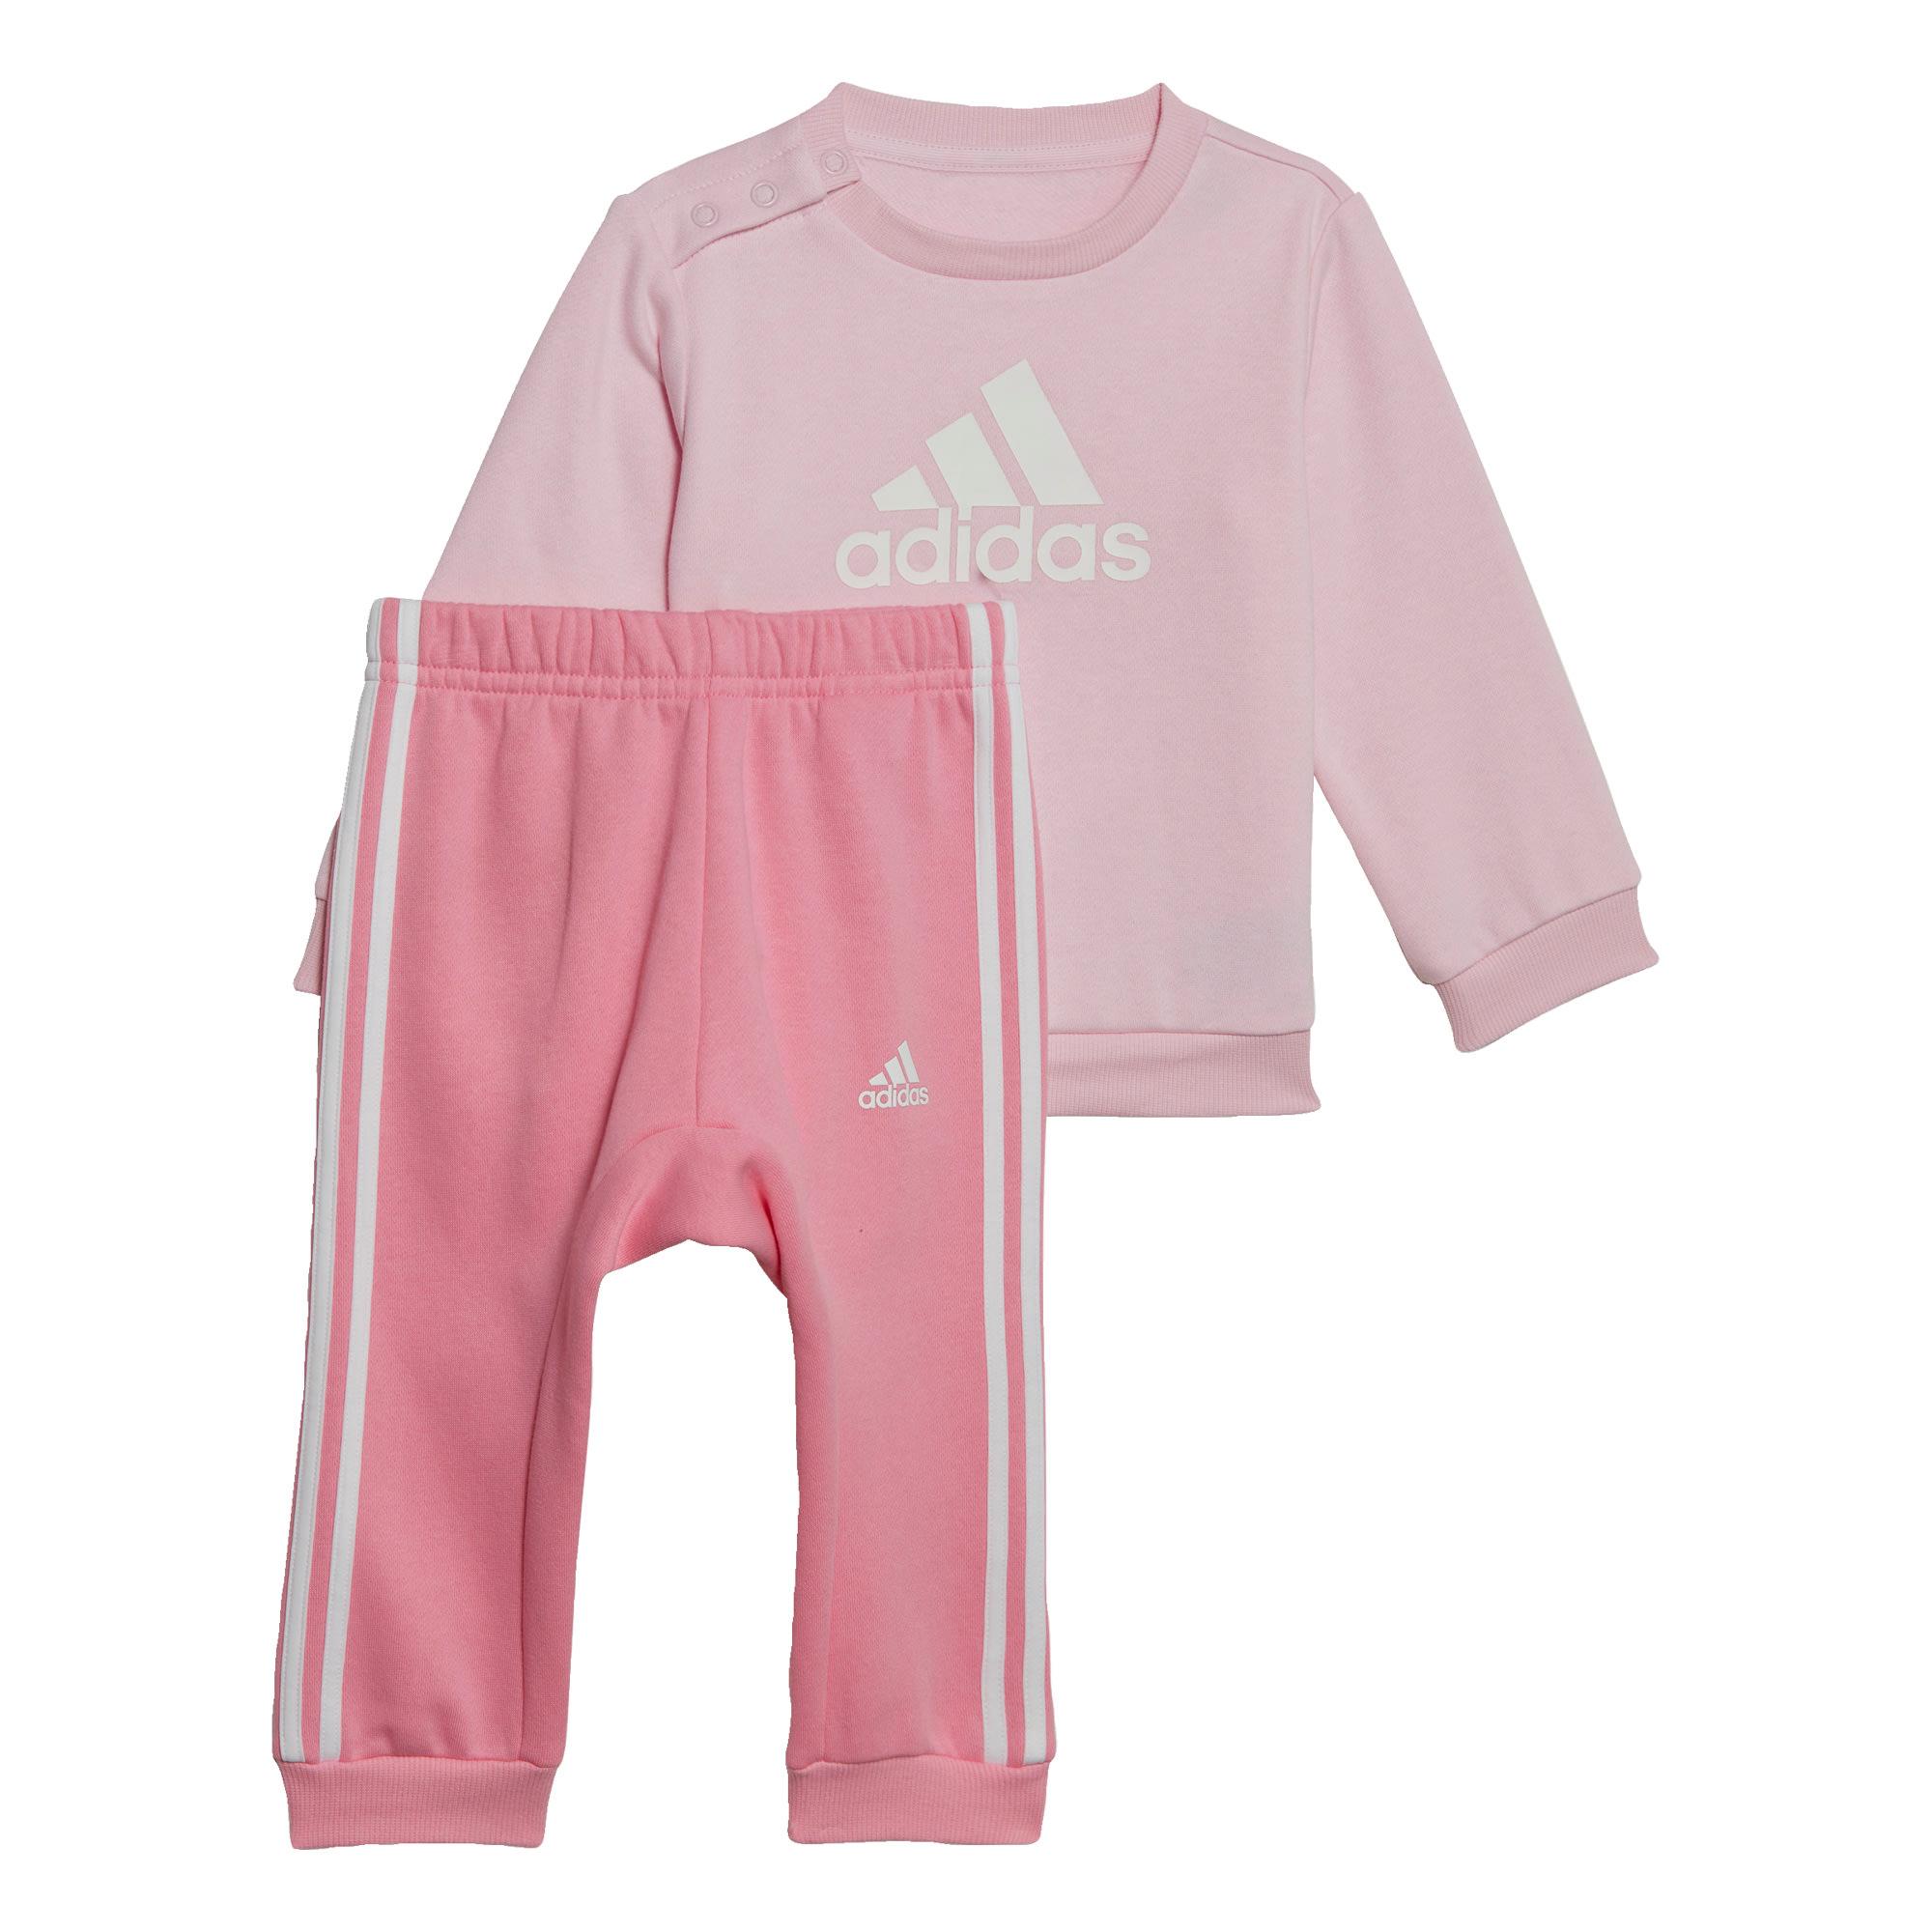 Adidas Badge of Sport Jogginganzug Trainingsanzug Kinder Clear Pink / White Online Shop von SportScheck kaufen